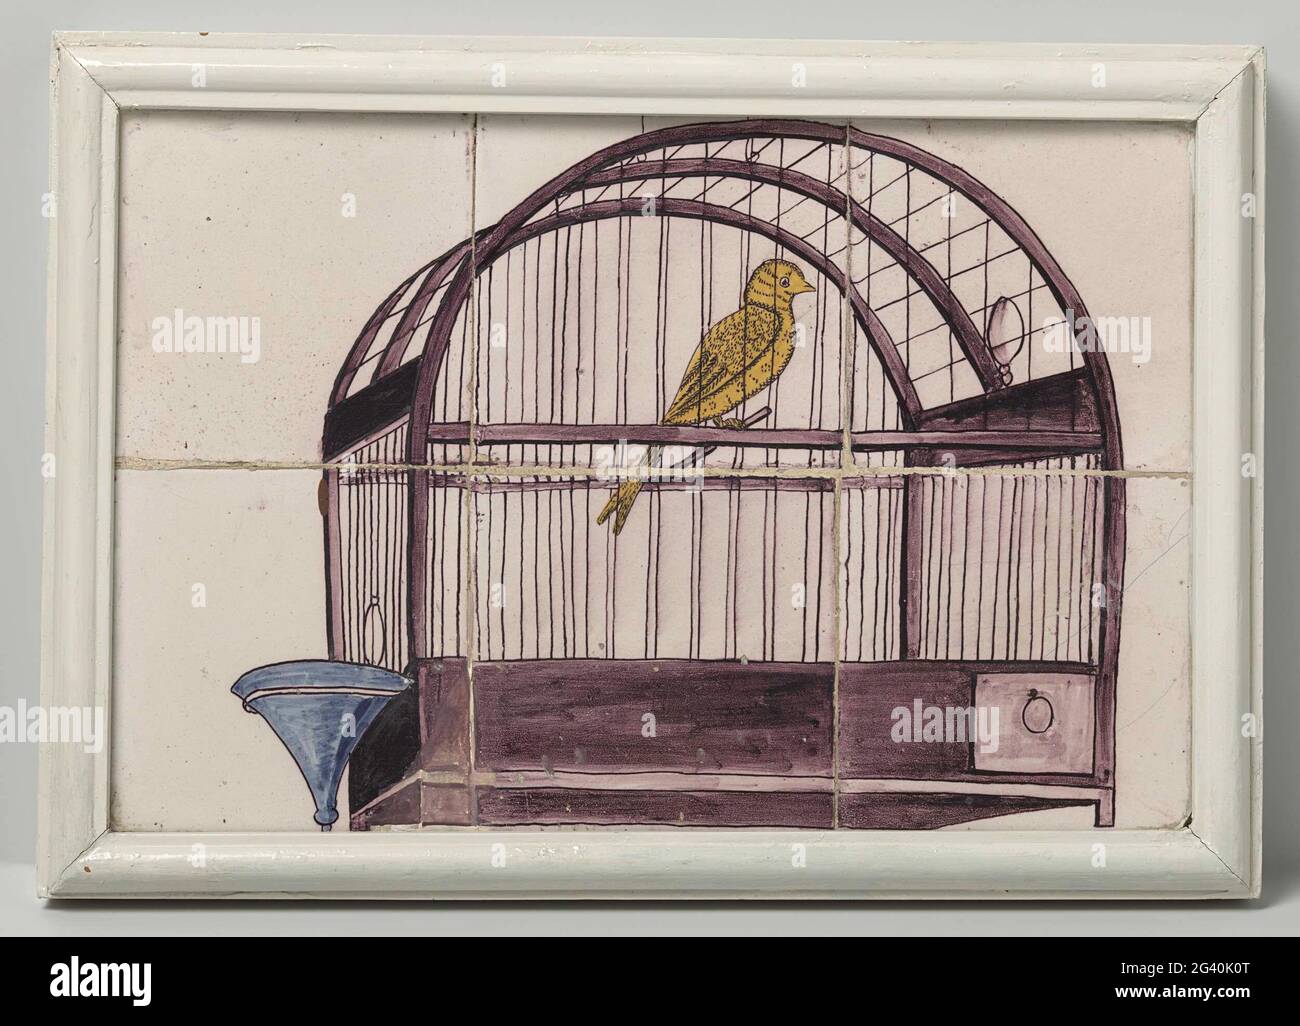 Tegola, dipinta con una rappresentazione di una gabbia di uccelli. Piastrella di sei tegole (2x3), dipinta in viola, blu e giallo con una rappresentazione di una gabbia di uccelli con abbeveratoio. Foto Stock